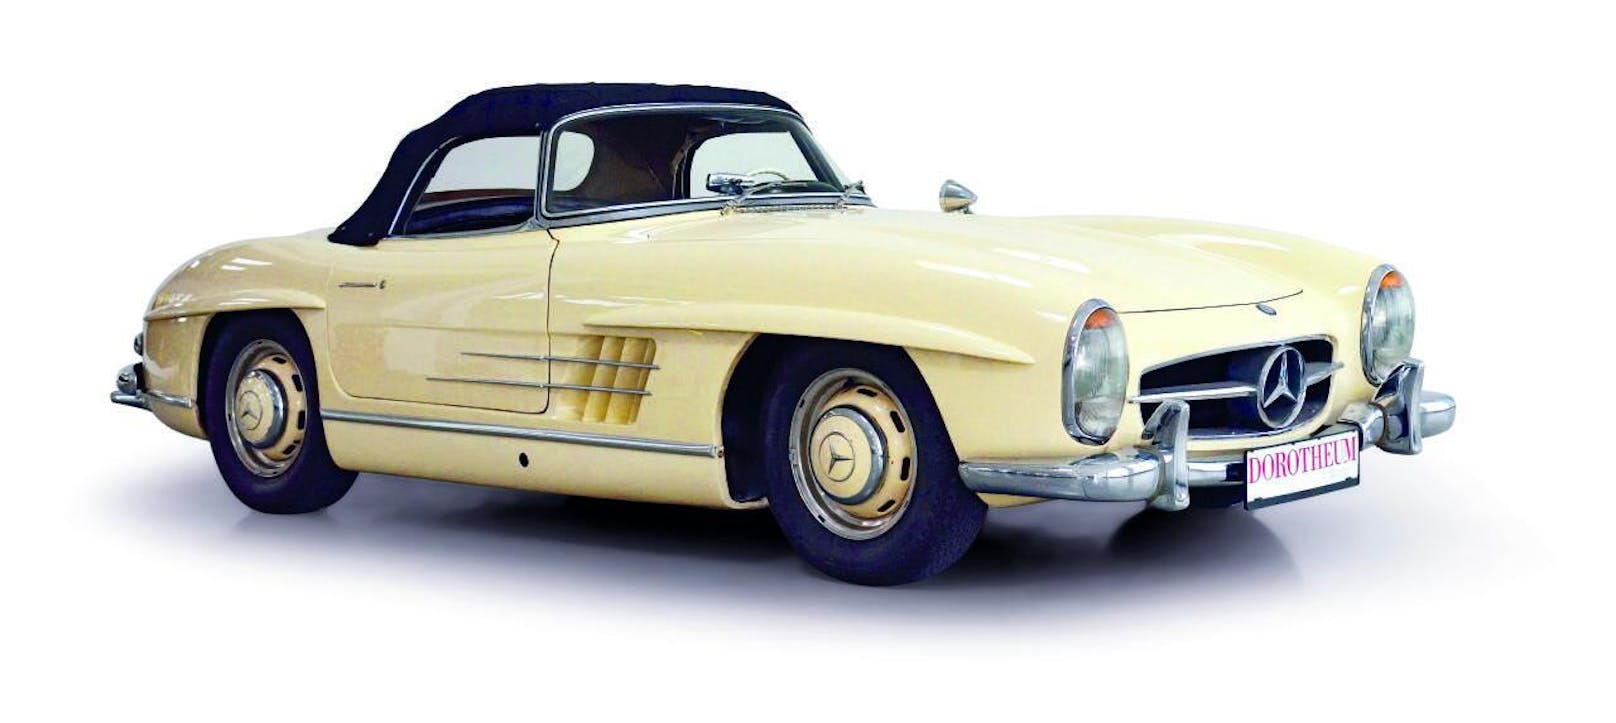 1960 Mercedes-Benz 300 SL Roadster;
Laufleistung: 86.648 km (abgelesen), Hubraum: 2.996 ccm/R6, Getriebe: 4-Gang, Leistung: 215 PS